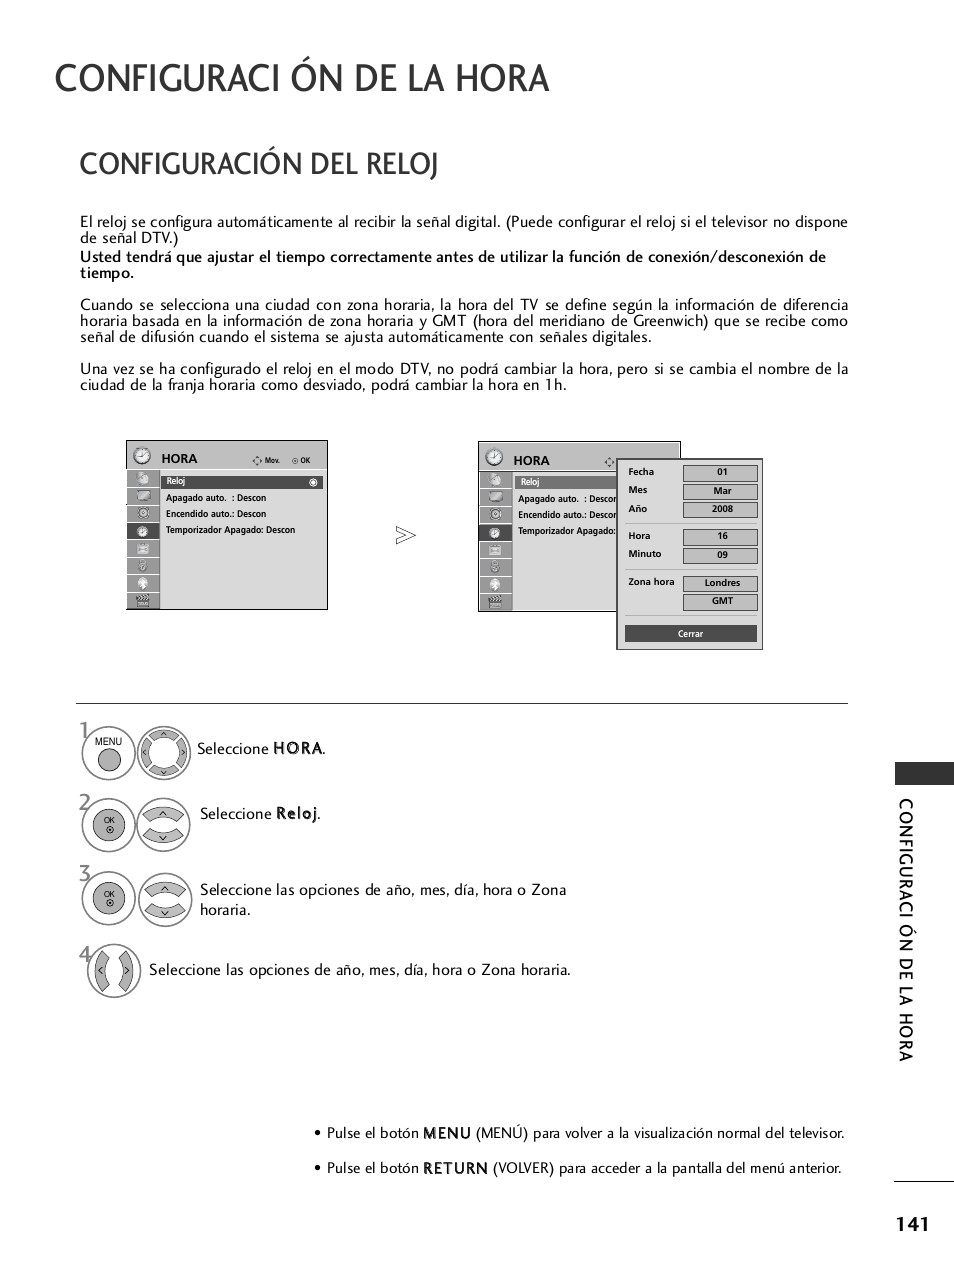 Configuraci ón de la hora, Configuración del reloj, Configur a ci ón de la hor a | LG 32LH40 Manual del usuario | Página 143 / 180